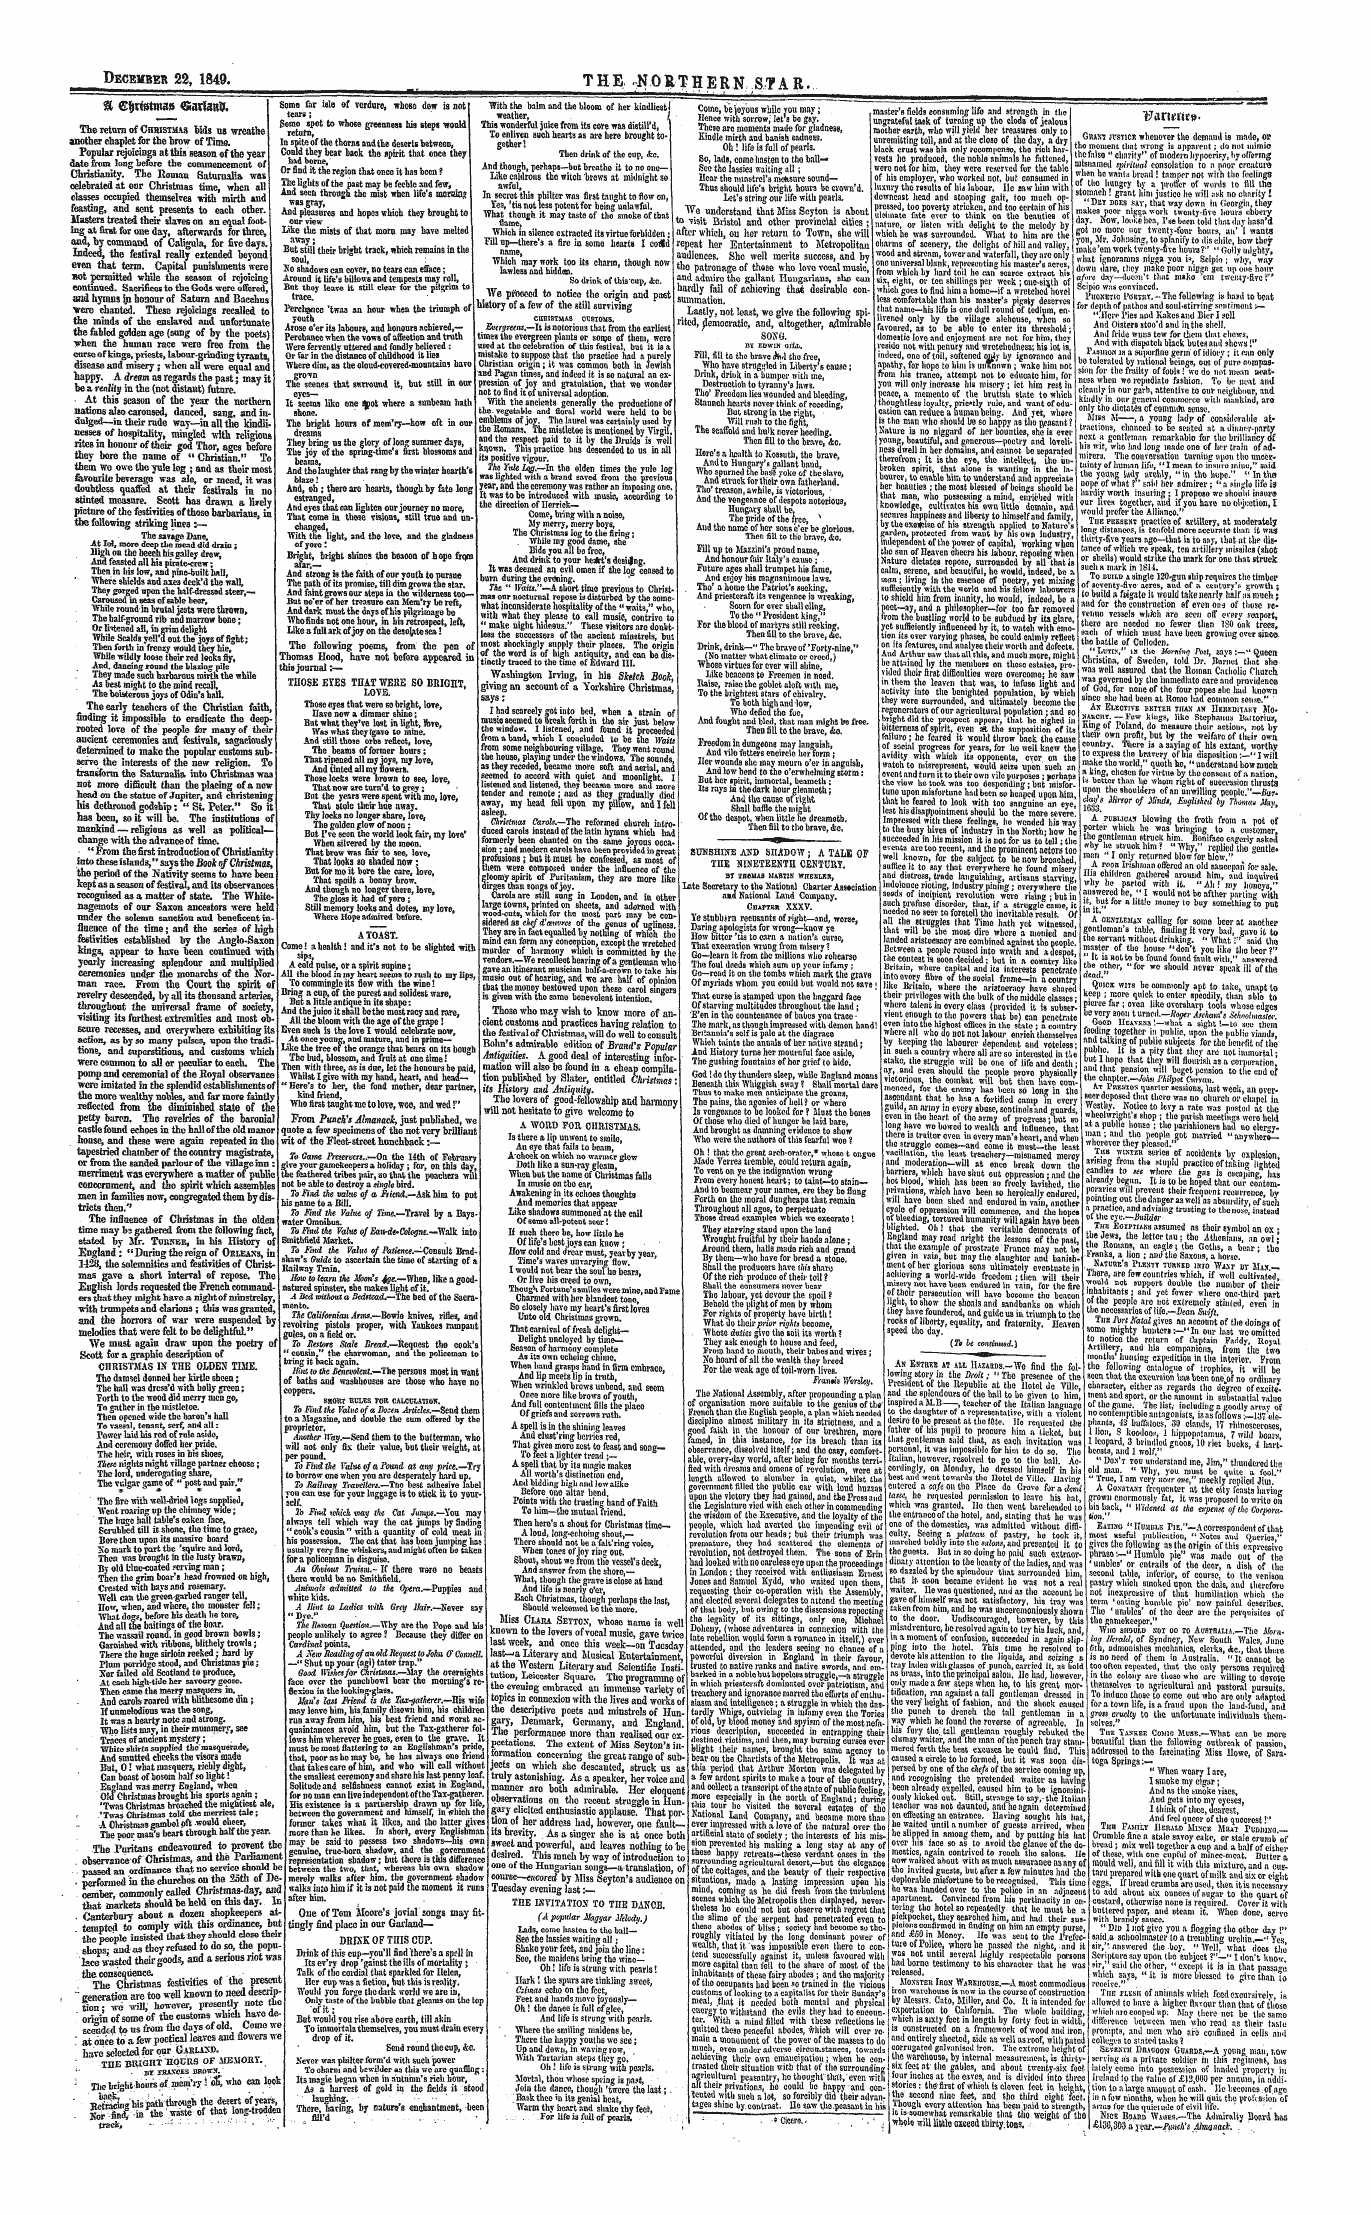 Northern Star (1837-1852): jS F Y, 1st edition - % €$Nstmag Garfottif.